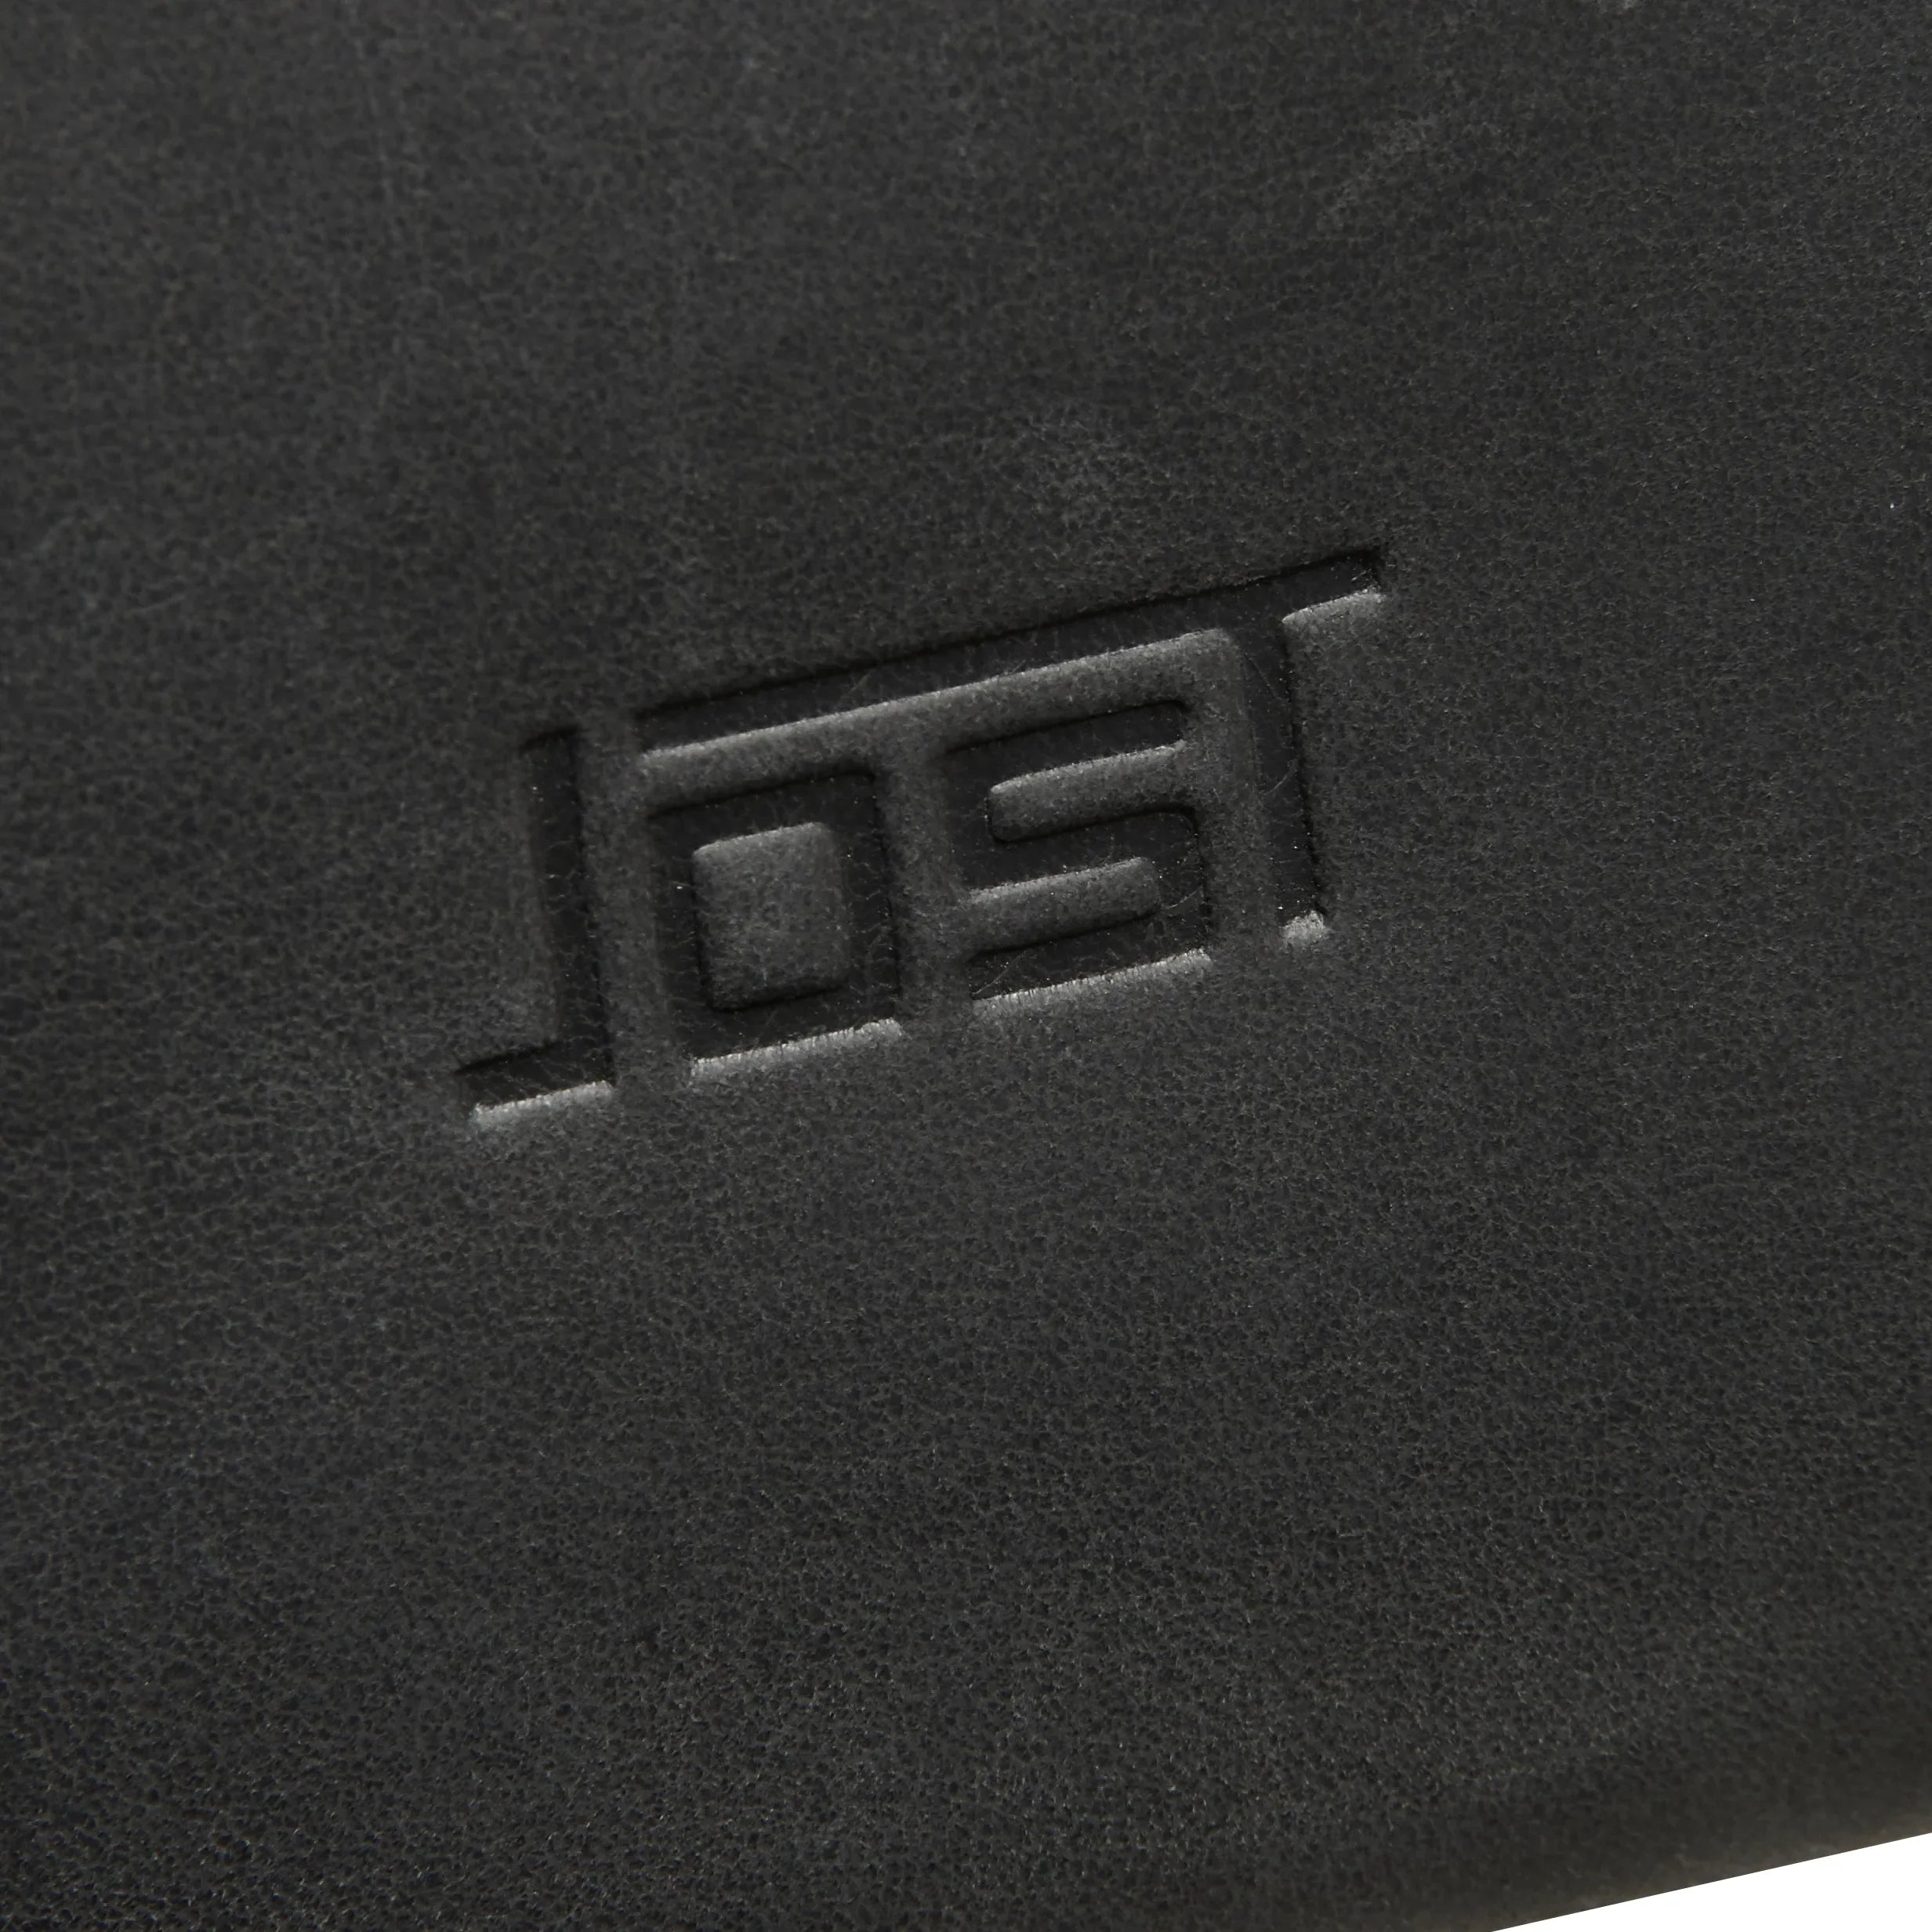 Jost Salo backpack 45 cm - black